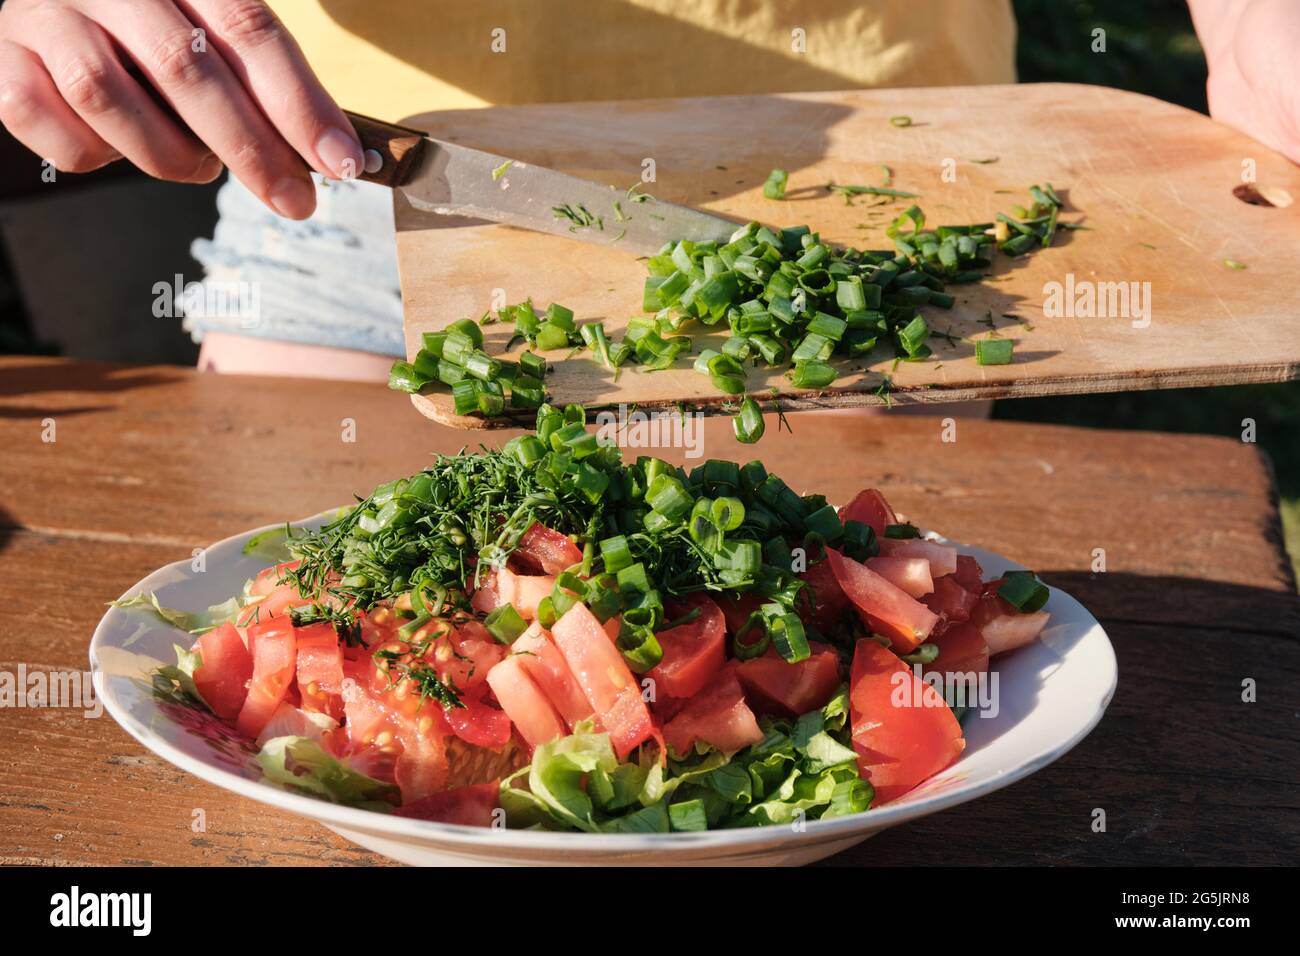 Fille ajoute des oignons à la salade de légumes. Cuisiner dans la nature. Banque D'Images